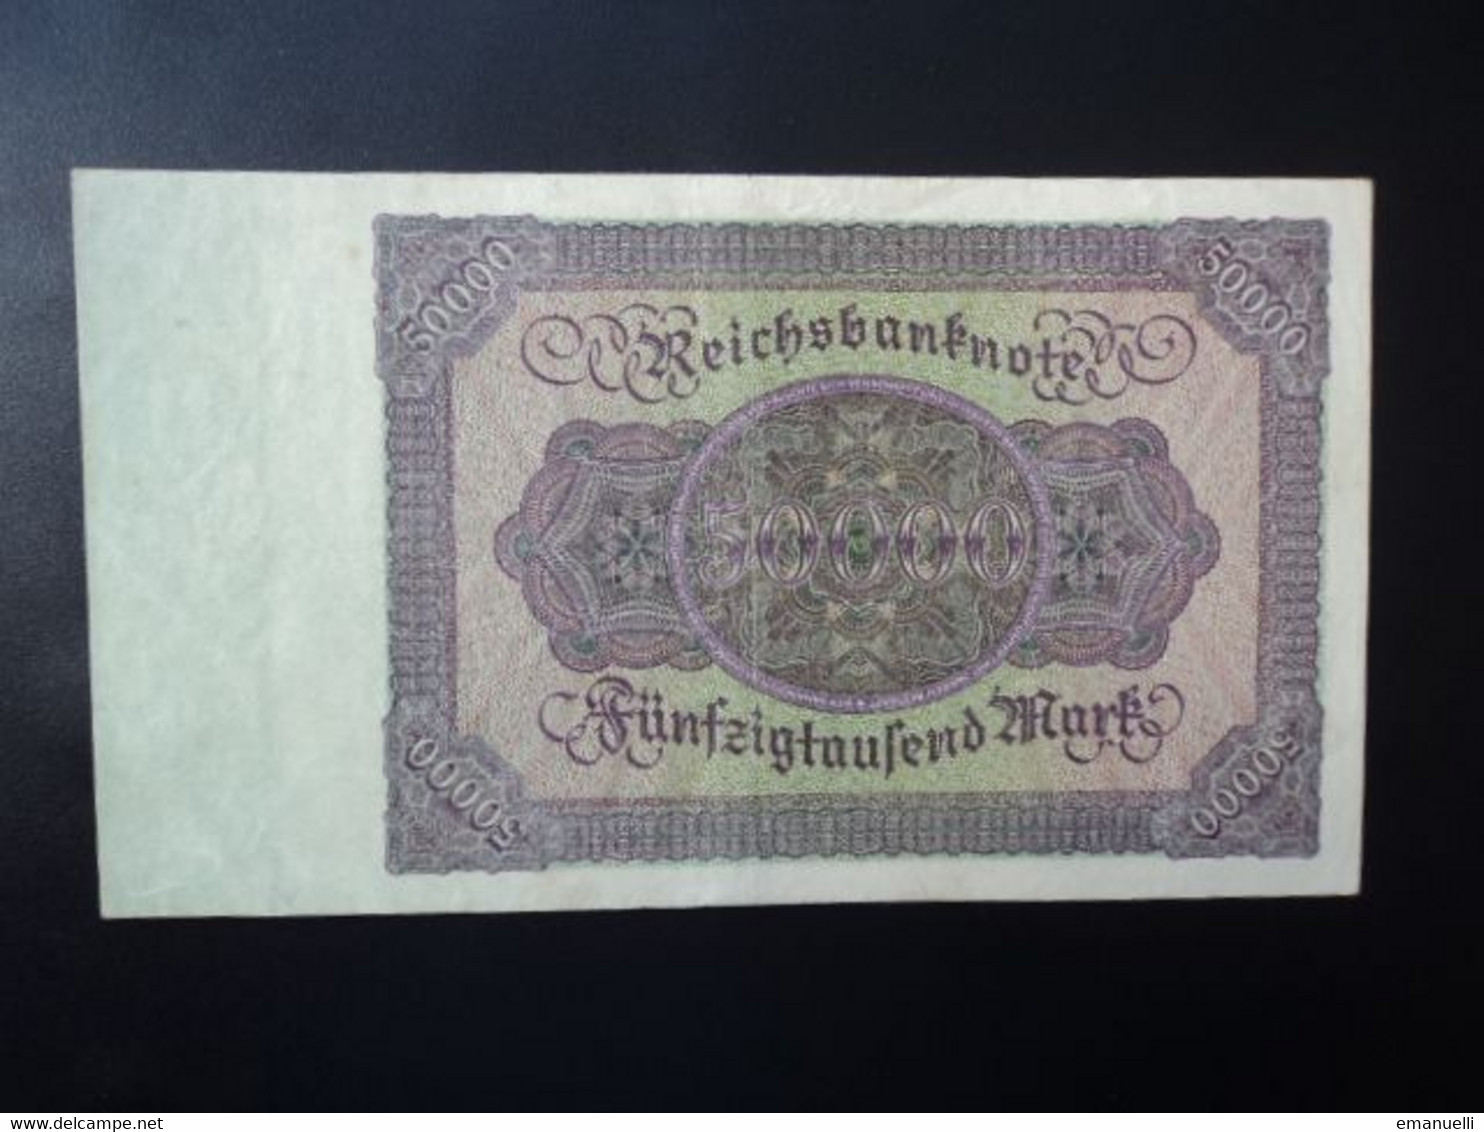 ALLEMAGNE * : 50 000 MARK   19.11.1922 (watermark Feuille De Chêne / Eichenlaubstreifen )     CA 78, ** / P 80       SUP - 50000 Mark